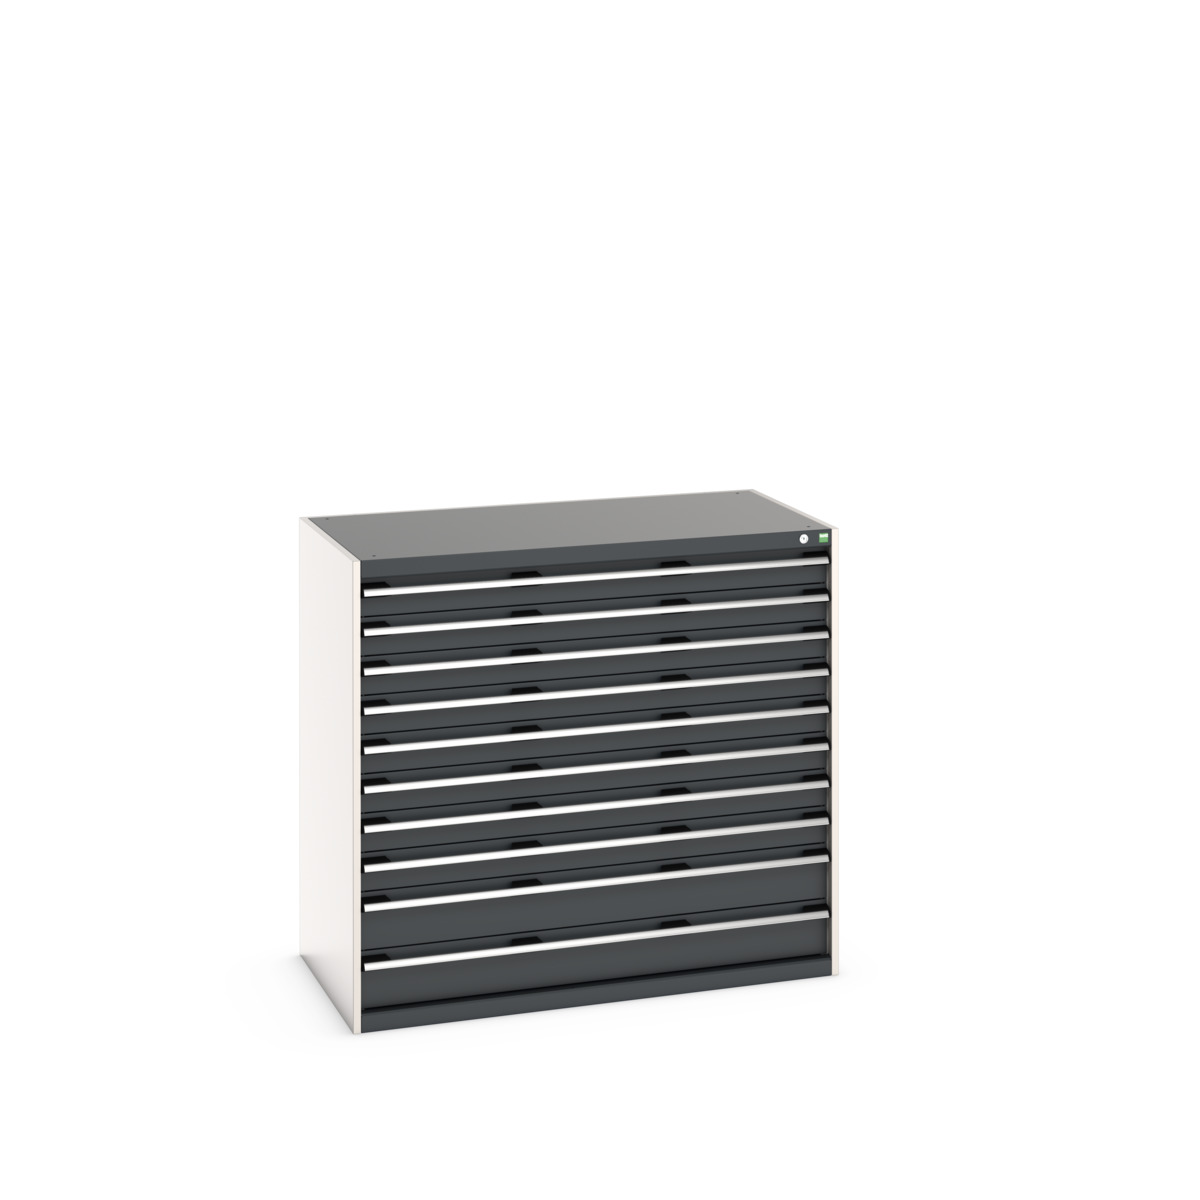 40030026.24V - cubio drawer cabinet